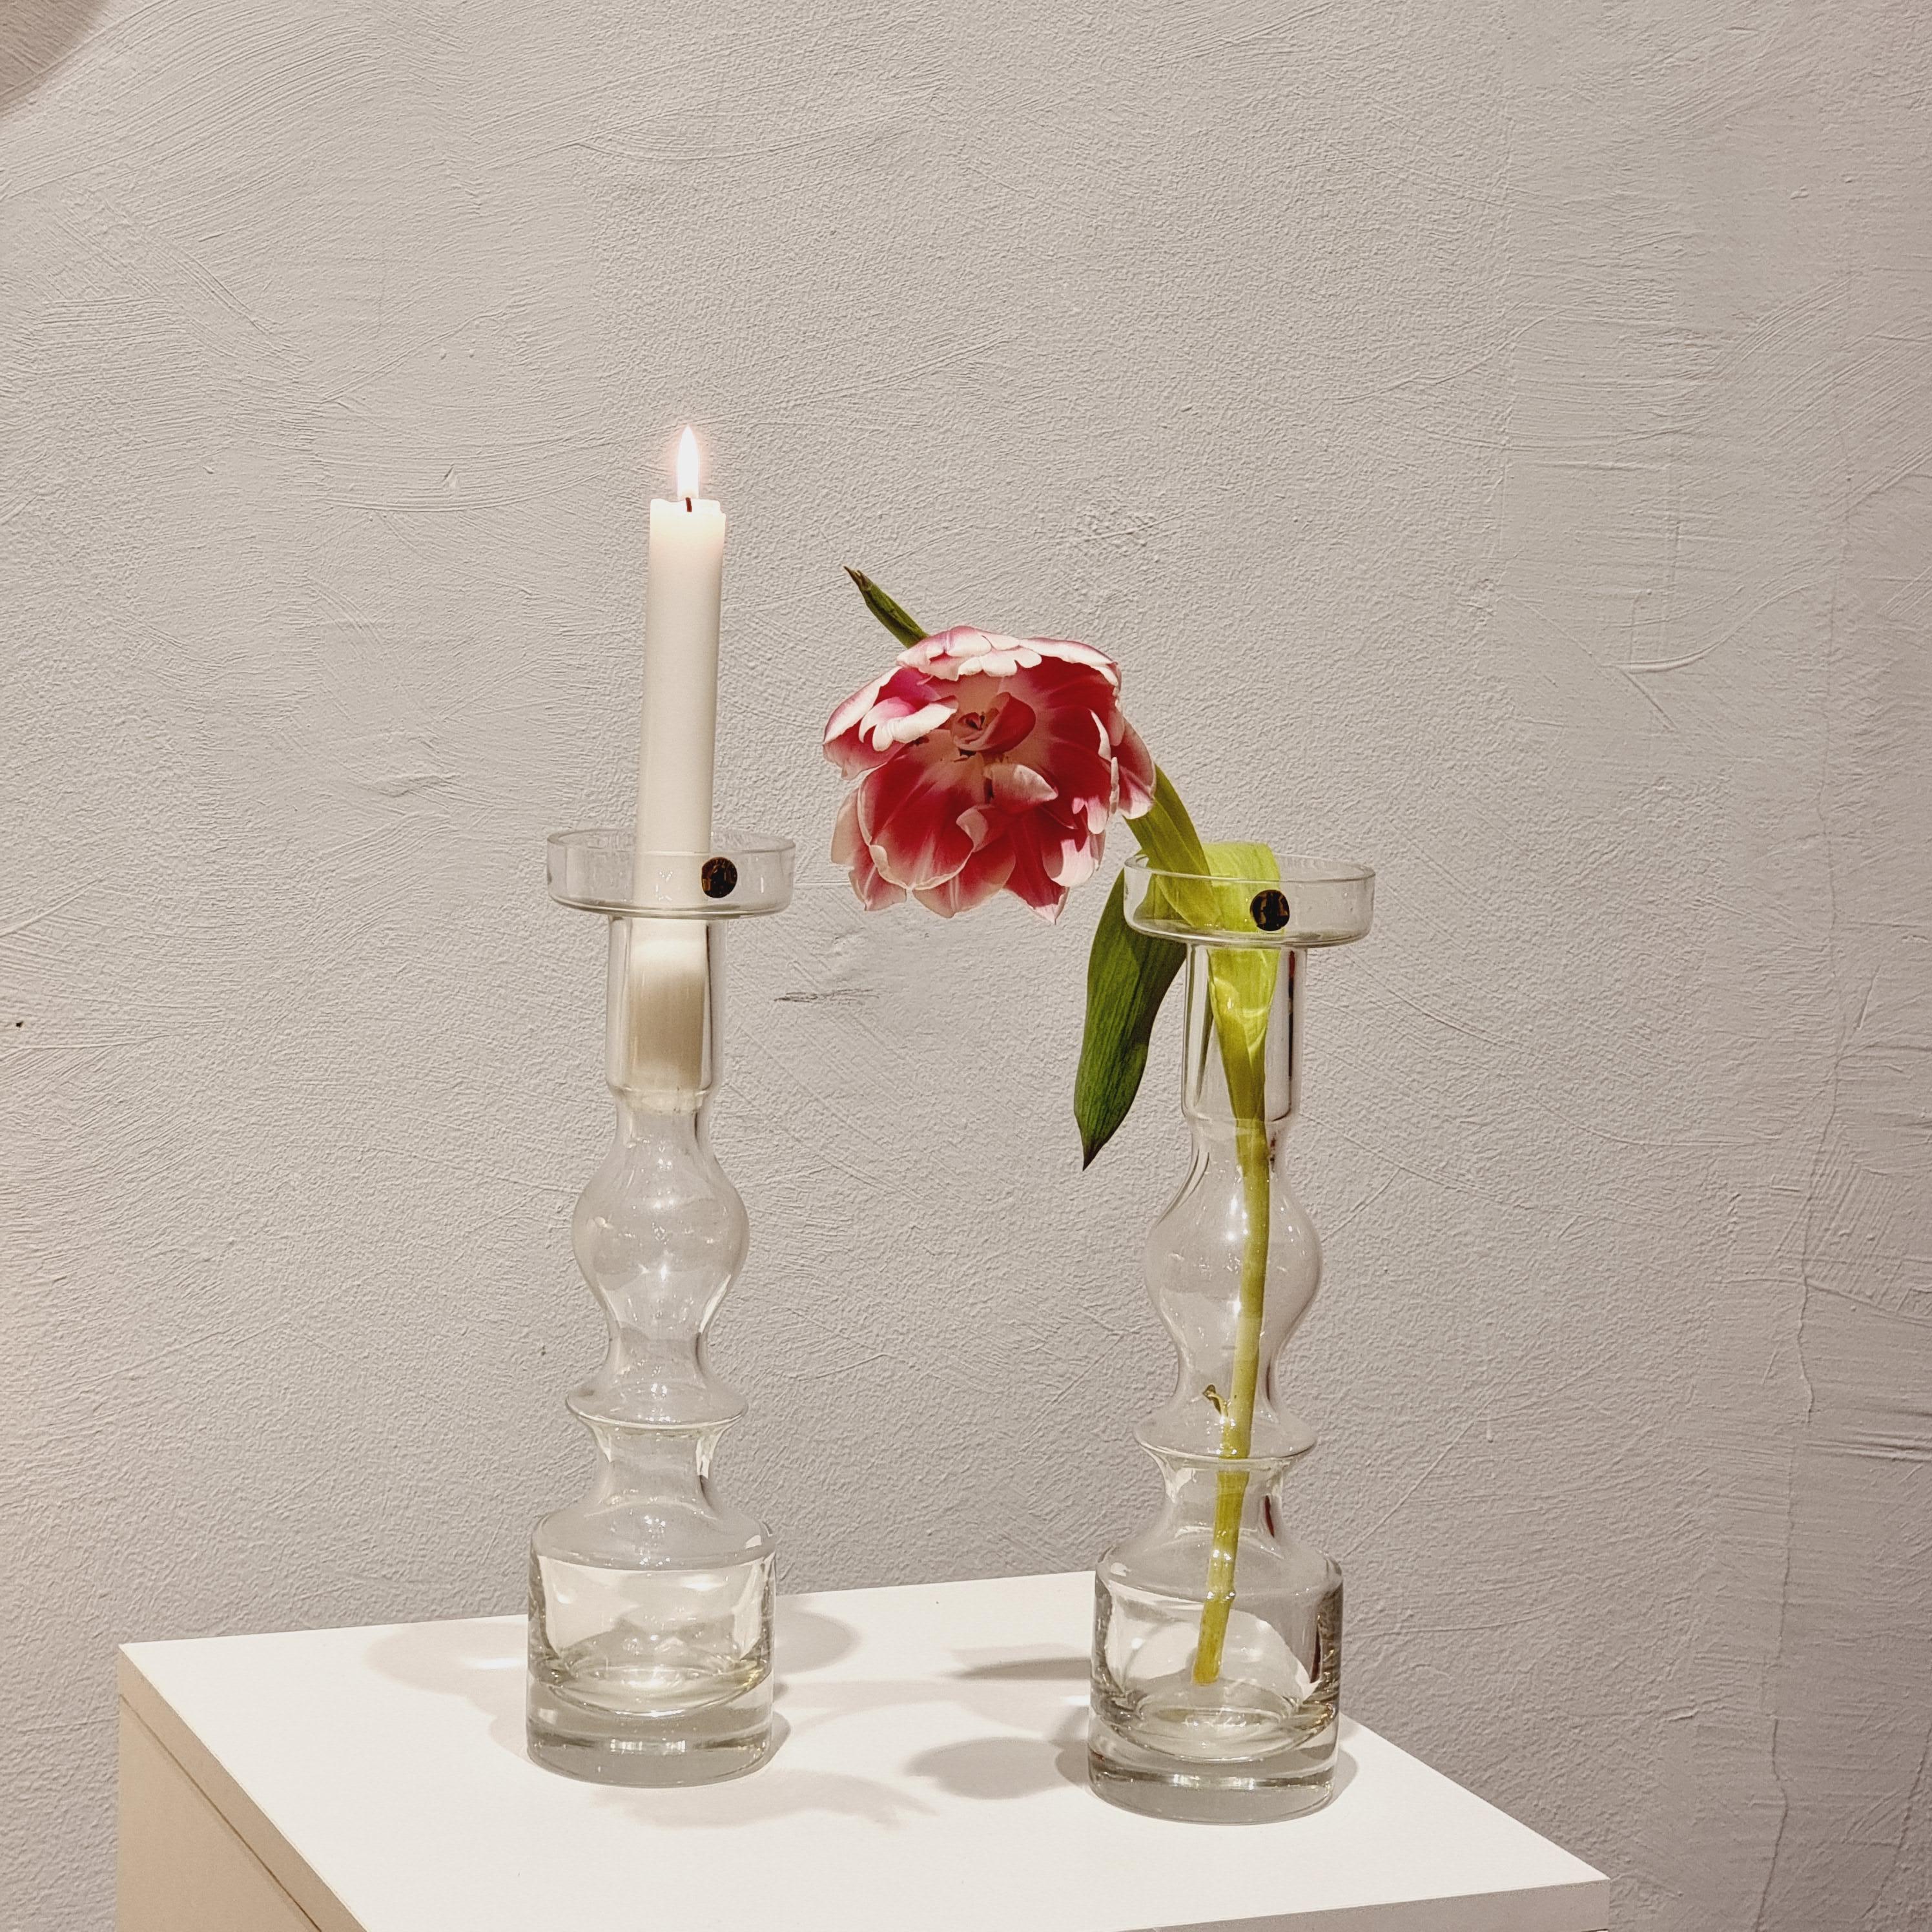 Ein Paar zeitlose, elegante Vasen/Kerzenständer aus massivem Glas. Modell Pompadour / 1945, entworfen von Nanny Still (1926-2009) für  Riihimäaen Lasi. Finnland 1960/70er Jahre. 

Dieses Paar aus schönem, transparentem Glas kann sowohl als Vase als